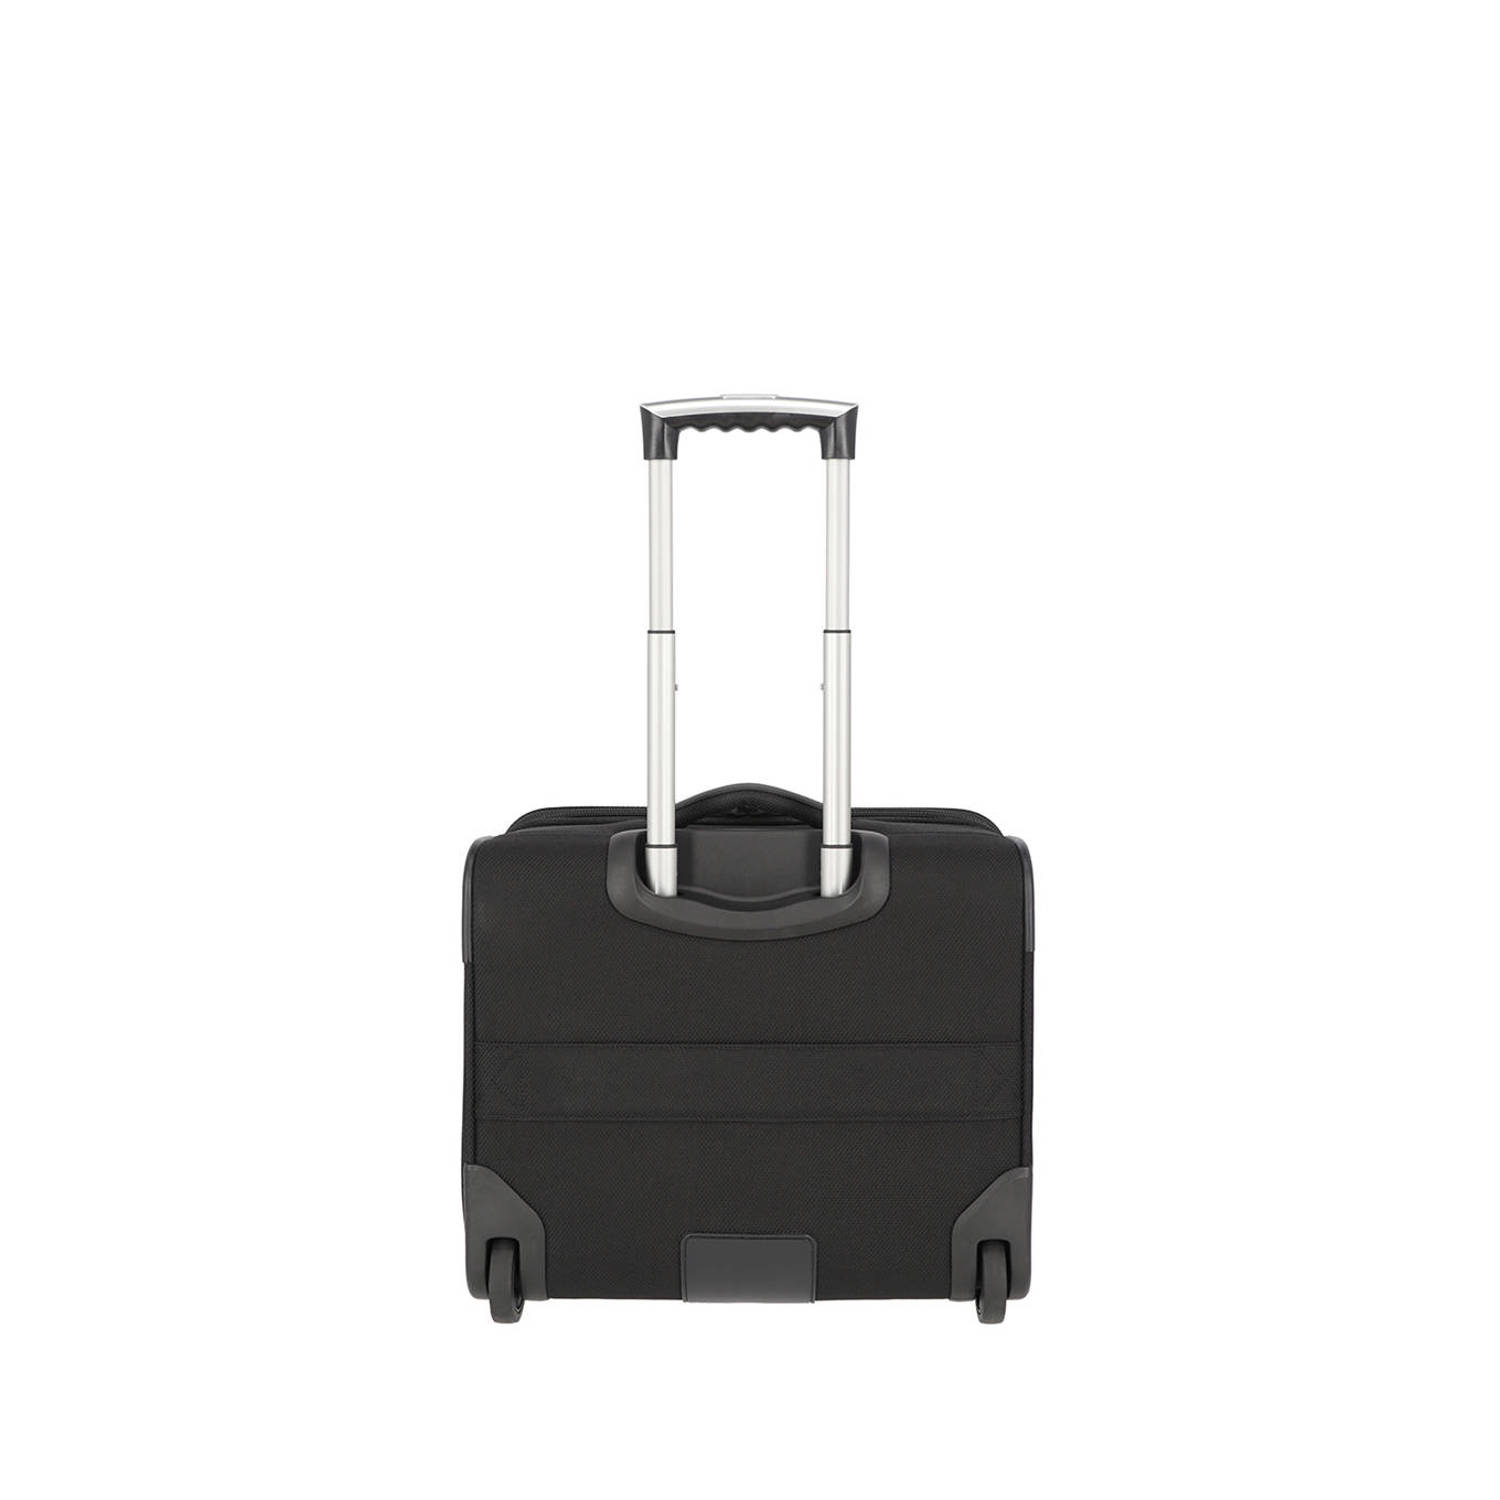 Travelite 15.6 inch laptop business trolley zwart